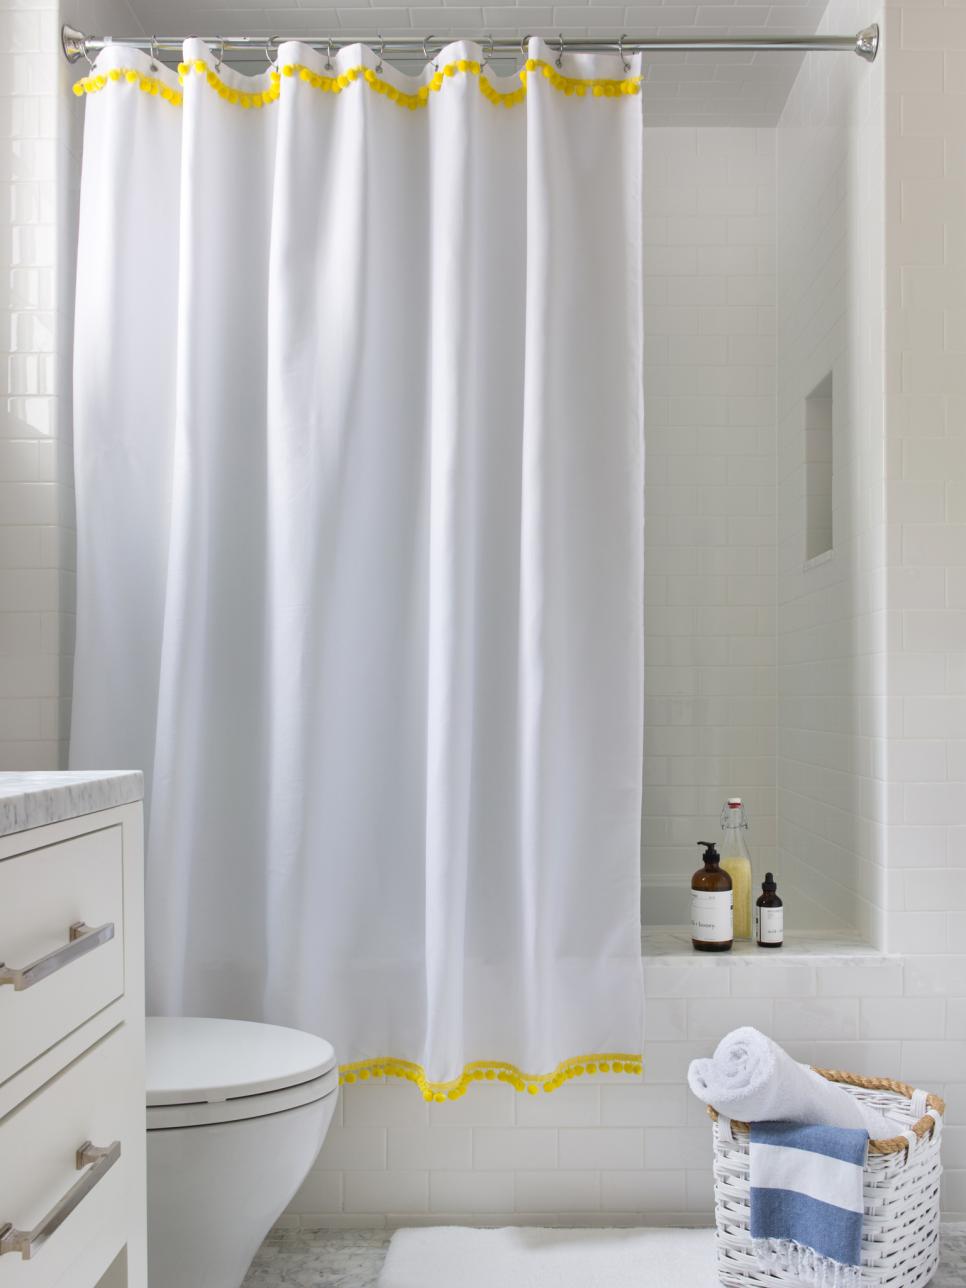 A fancier shower curtain